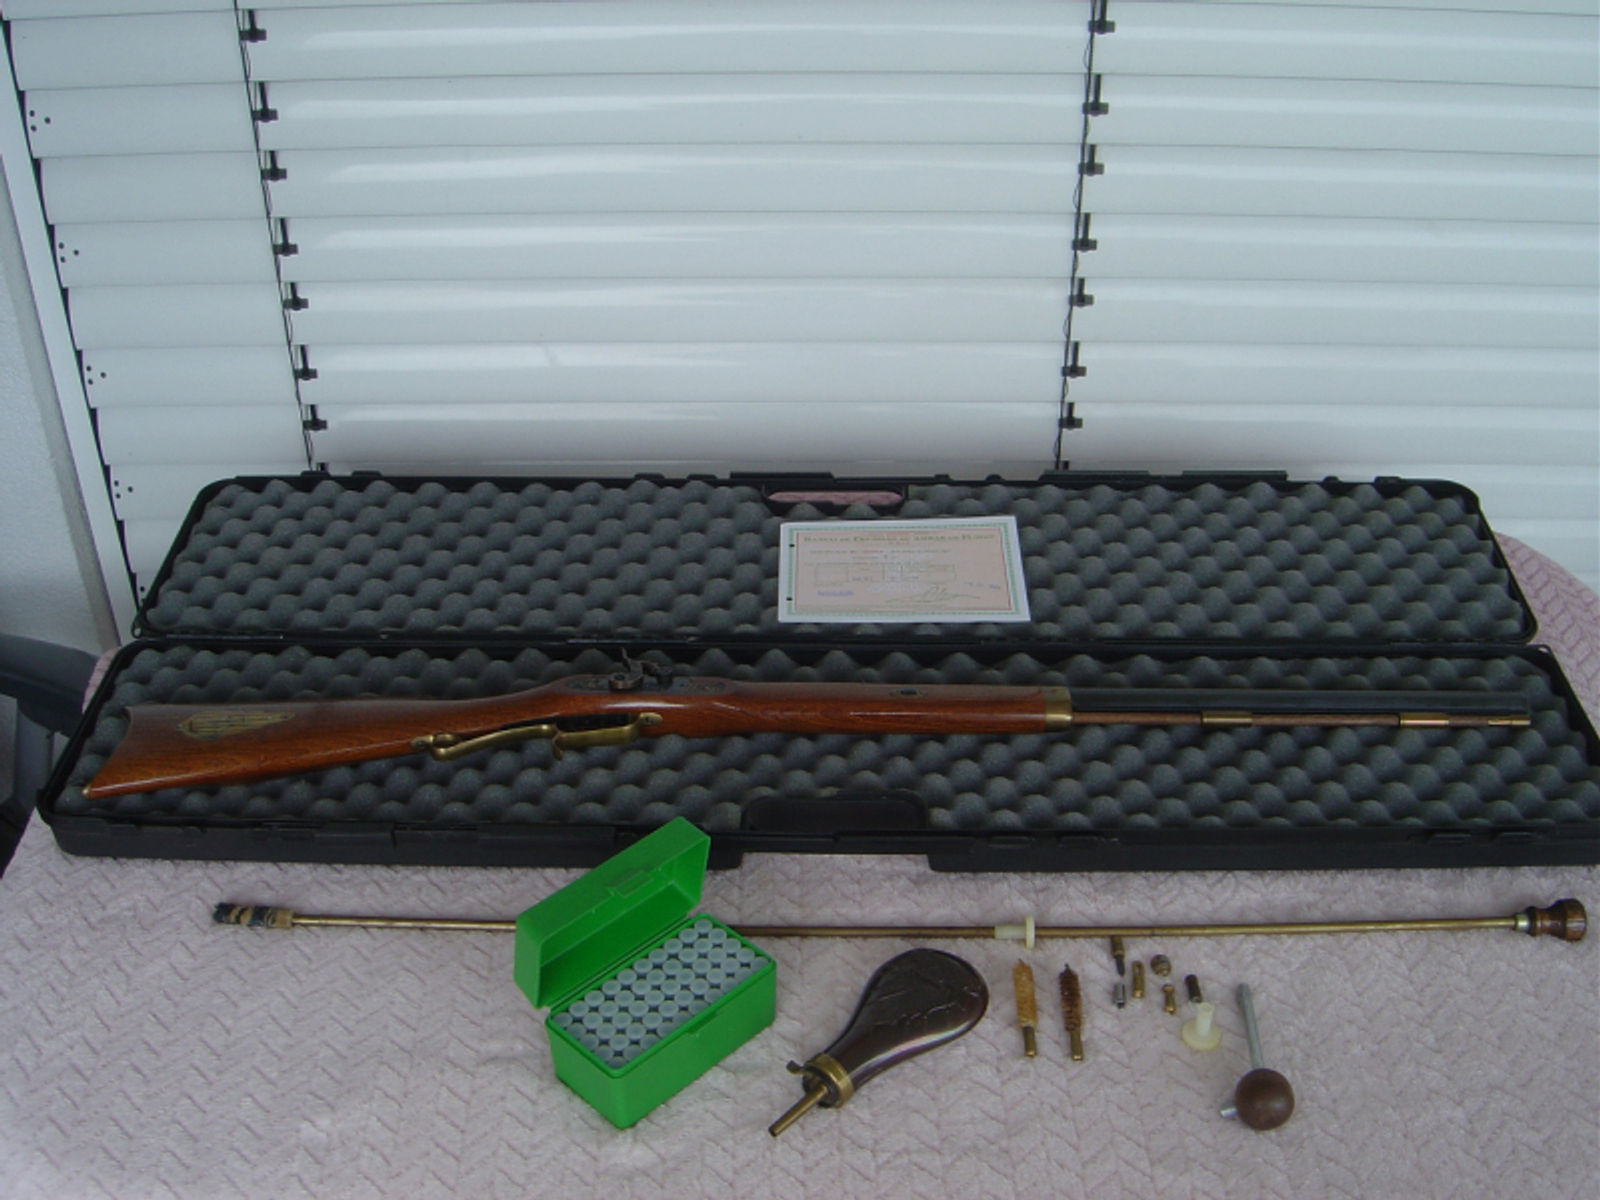 Hawken Rifle Kaliber 45 mit Koffer Pulverflasche und Zubehör